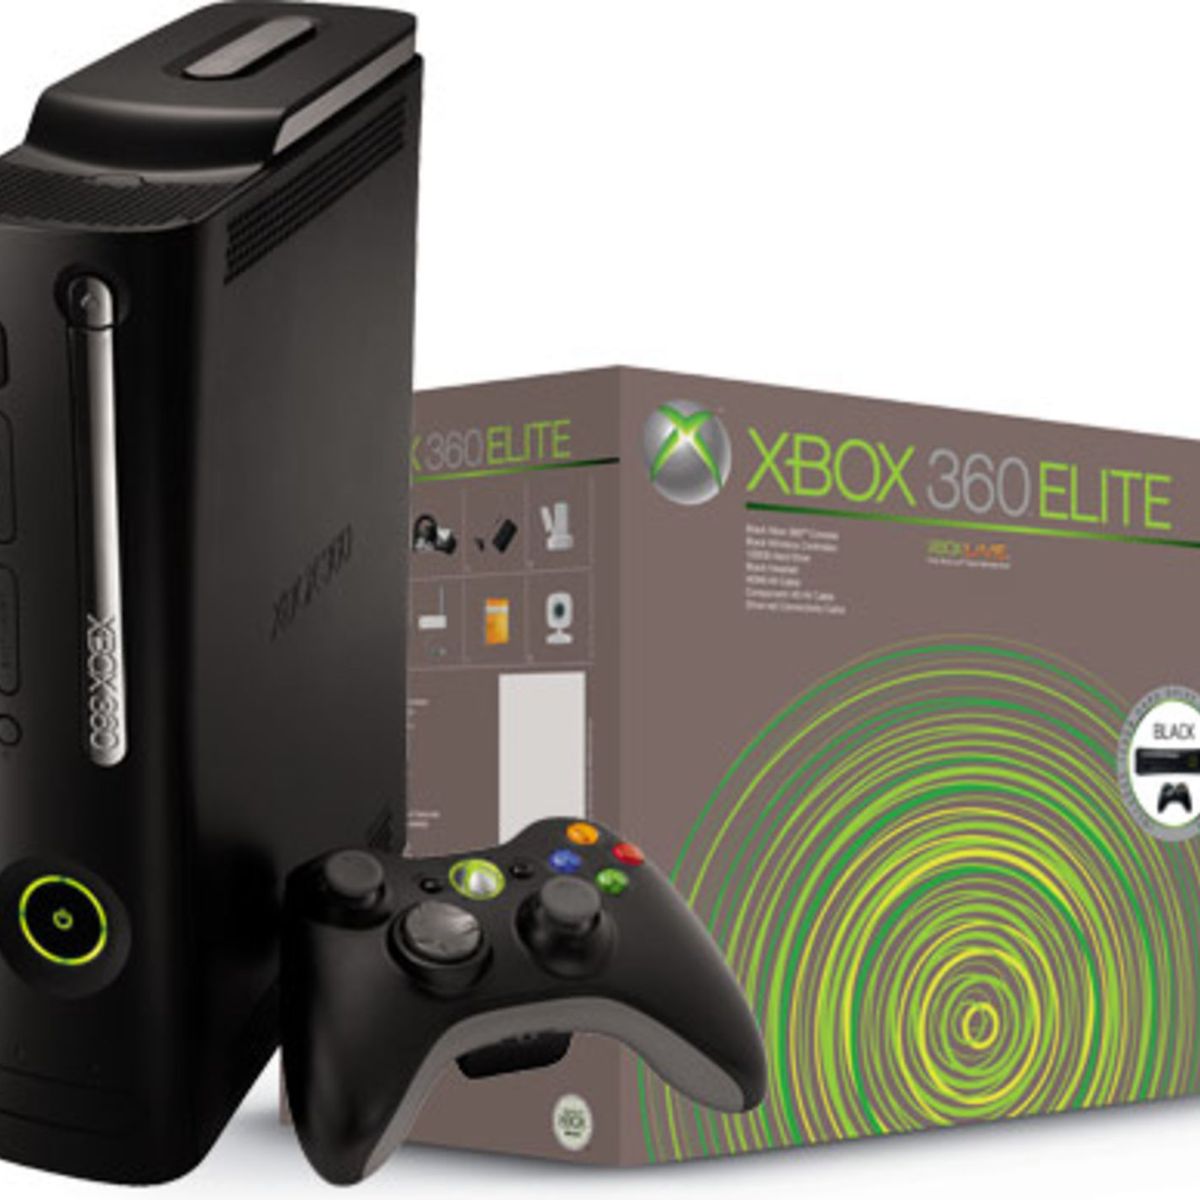 Xbox 360 desbloqueado com jogos leia a descrição - Videogames - Elói Mendes  1249110906